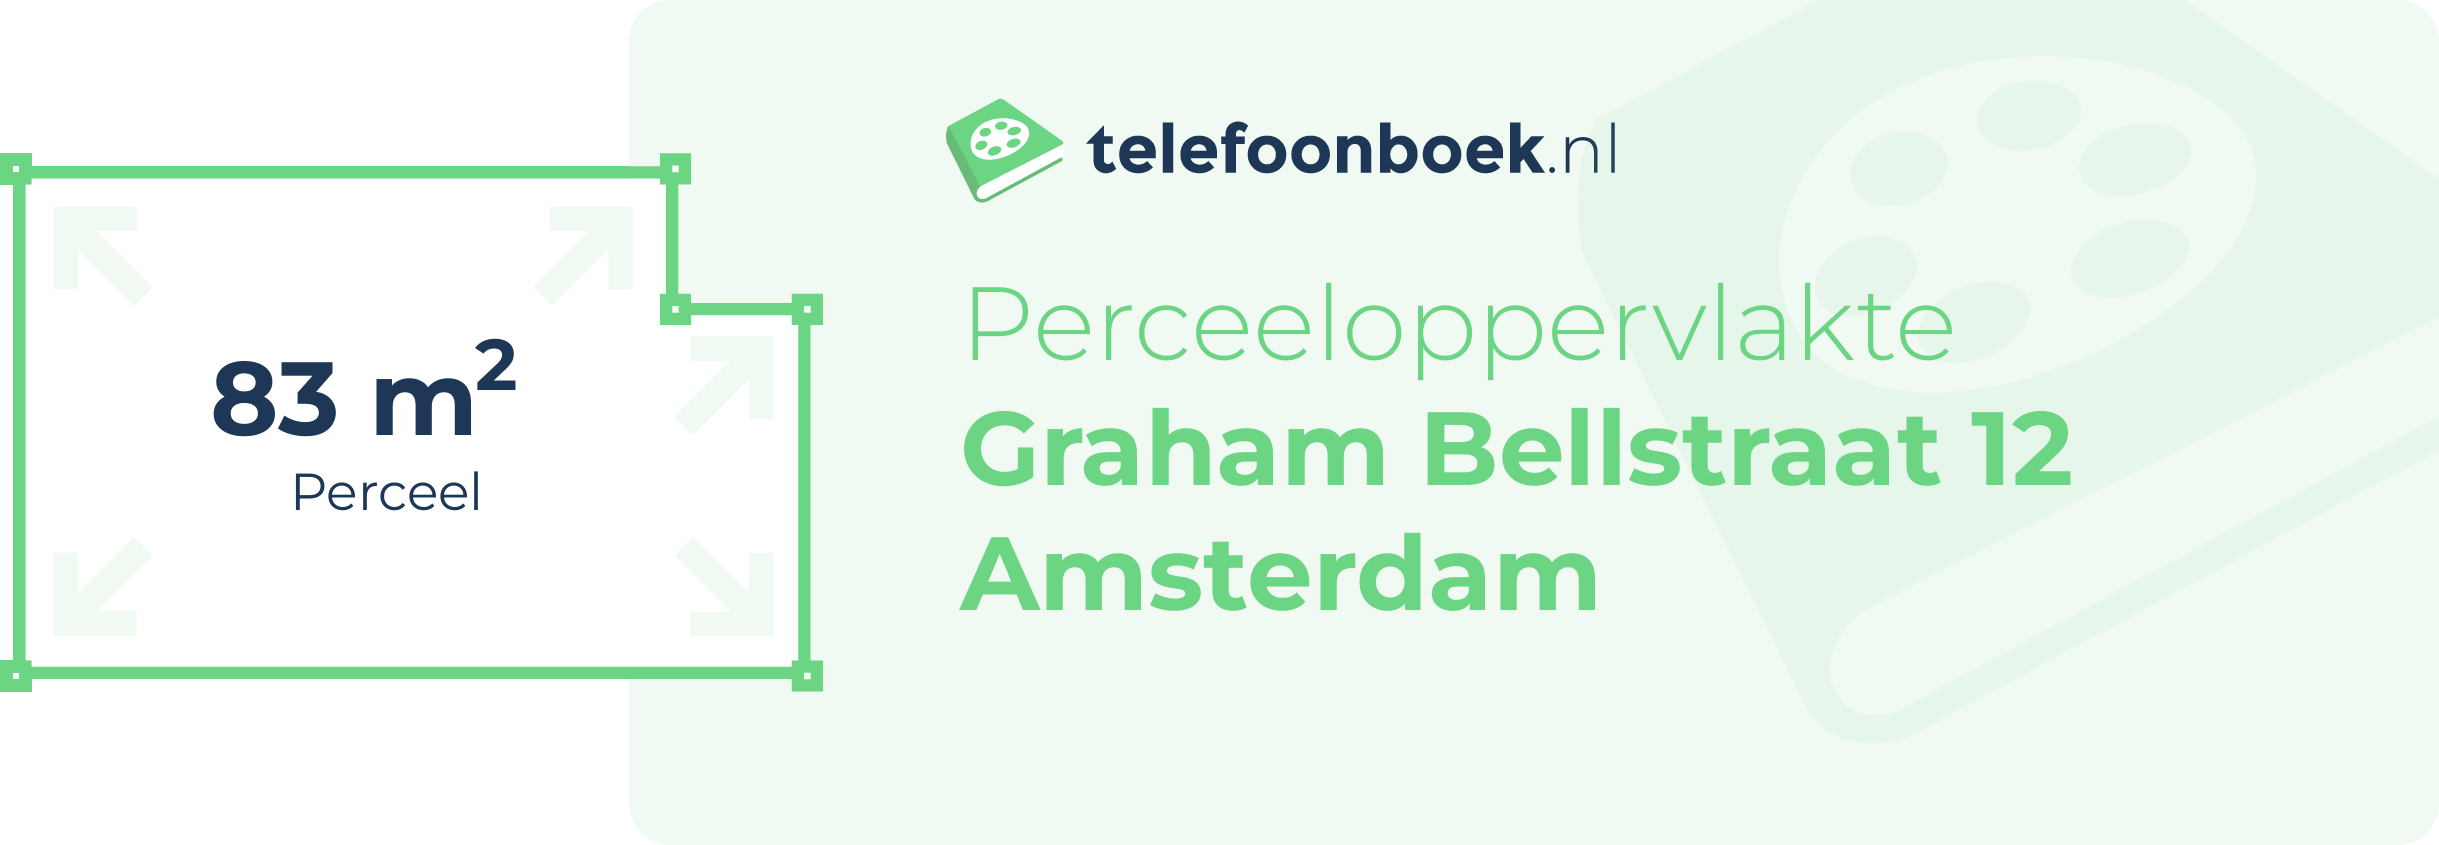 Perceeloppervlakte Graham Bellstraat 12 Amsterdam